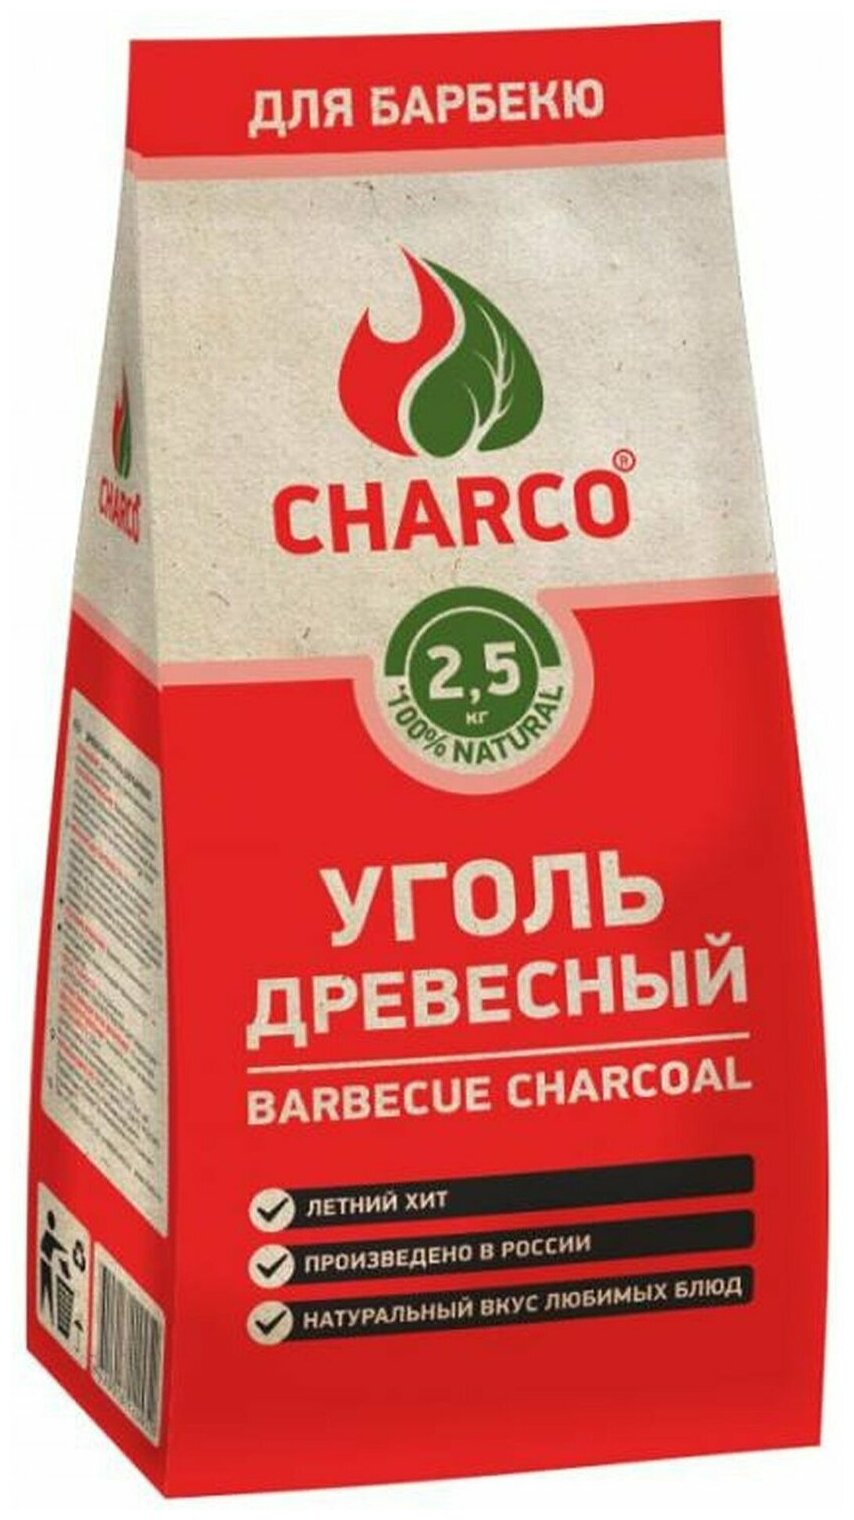 Charco Уголь древесный для барбекю 25 кг